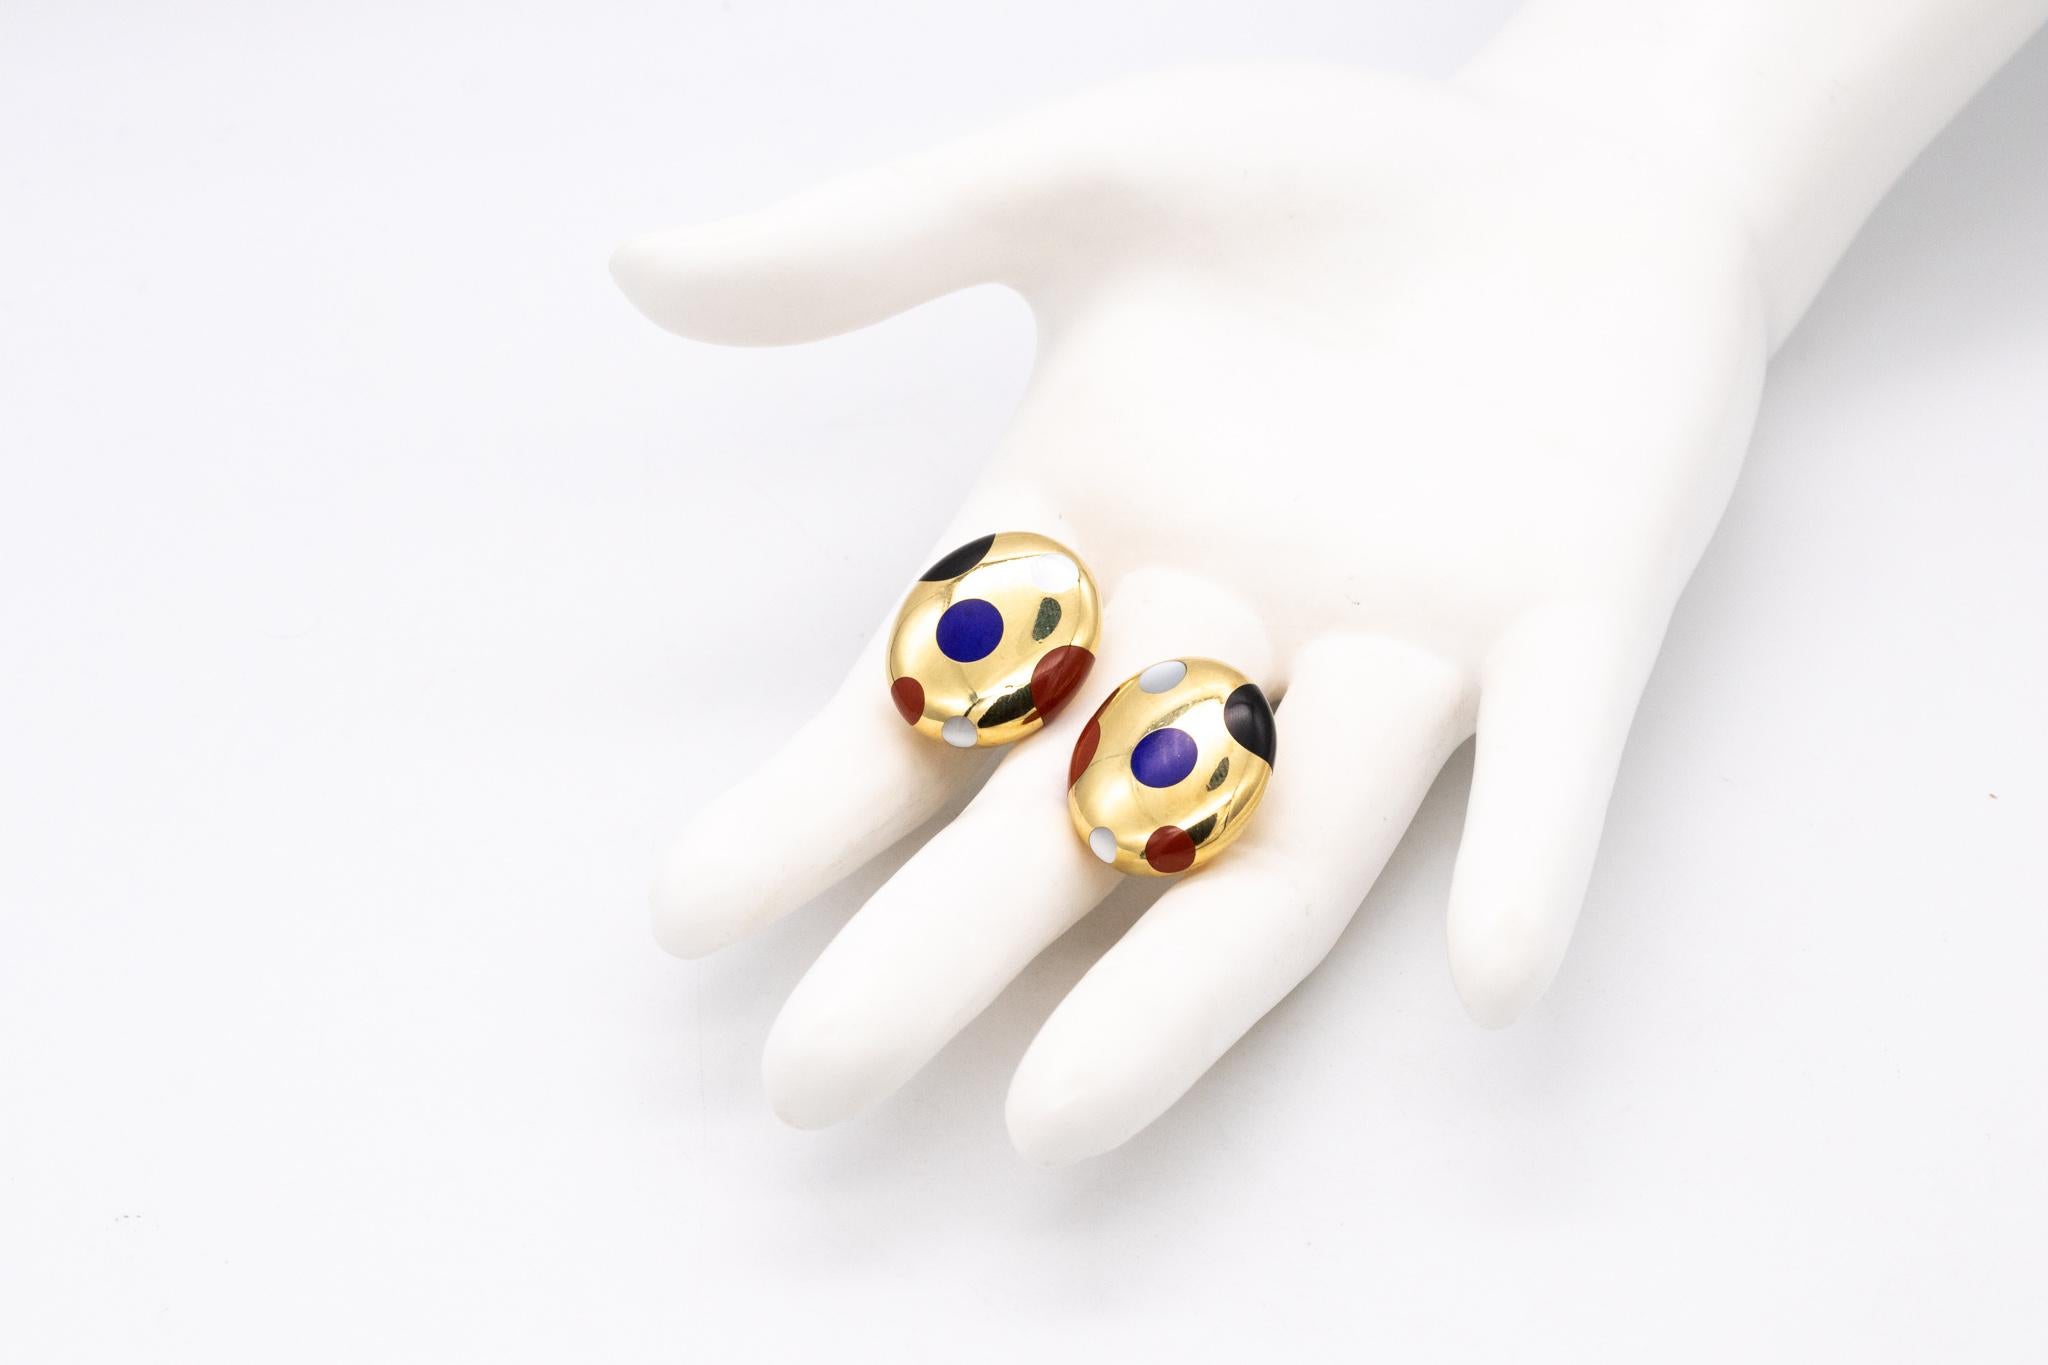 Women's Tiffany & Co 1977 Angela Cummings Geometric Earrings in 18Kt Gold with Gemstones